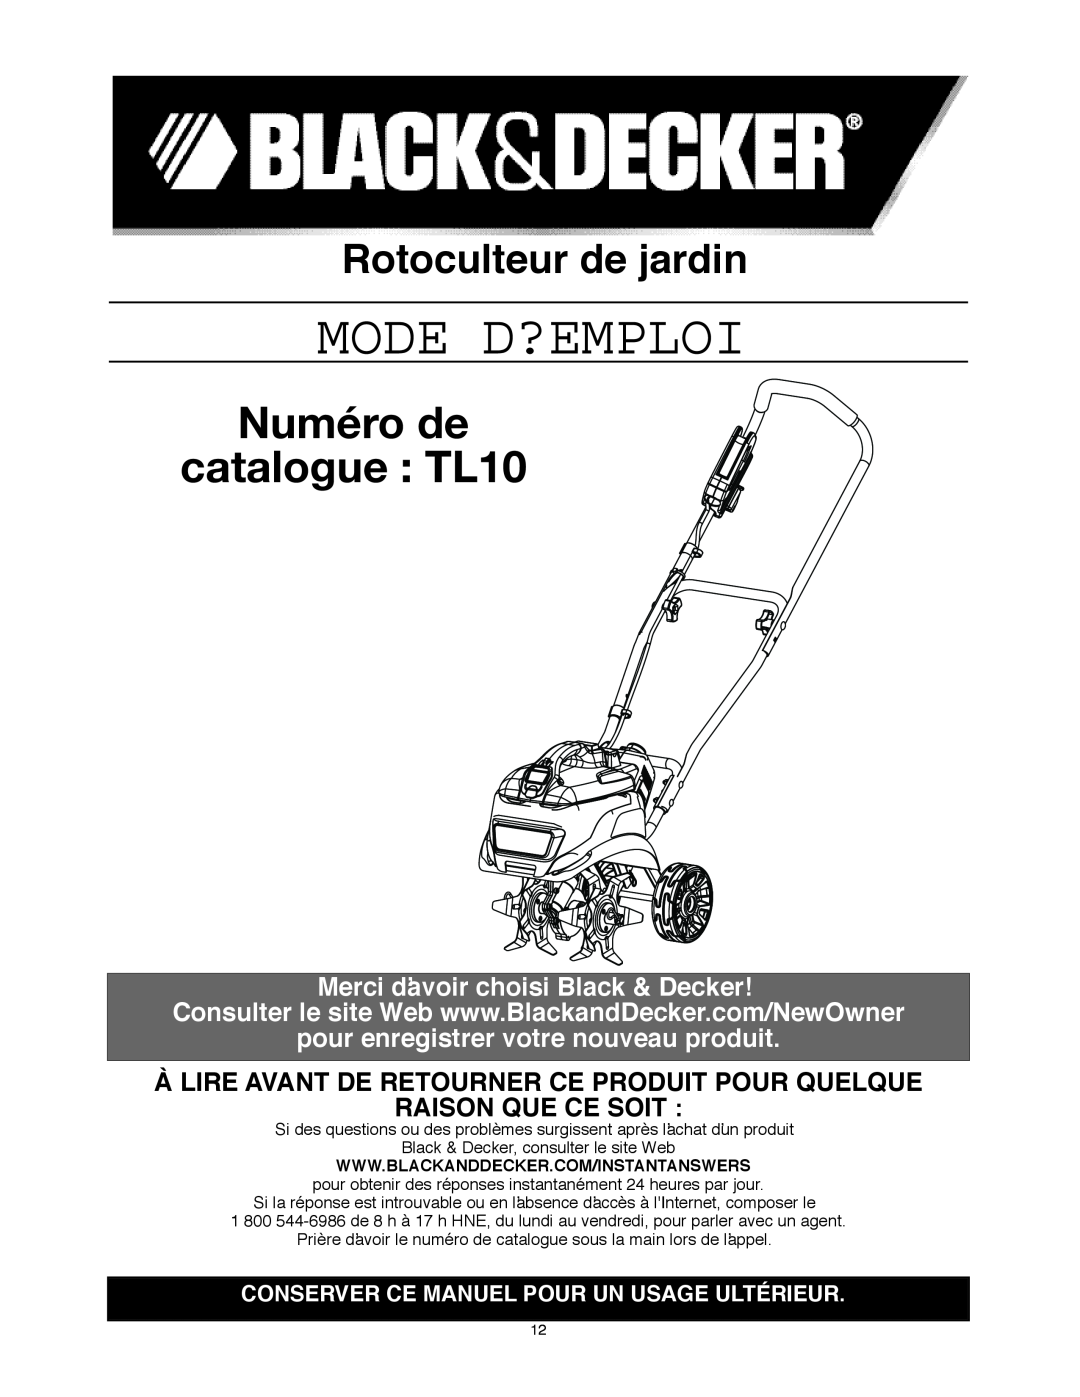 Black & Decker Numéro de catalogue TL10, Rotoculteur de jardin, Merci dʼavoir choisi Black & Decker, Mode D?Emploi 